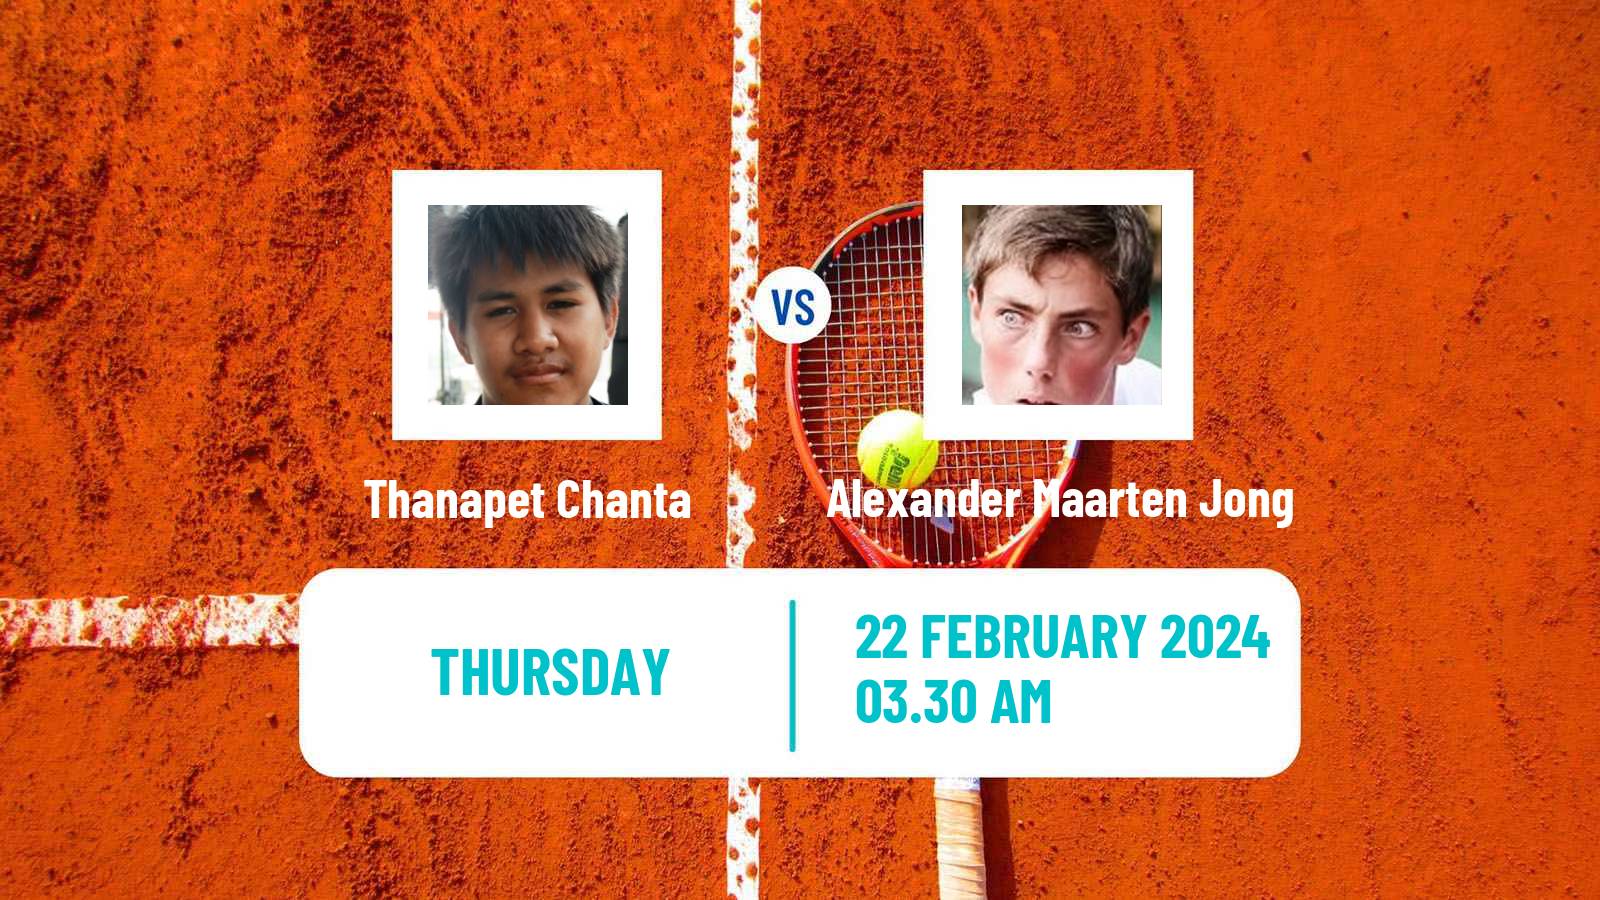 Tennis ITF M15 Nakhon Si Thammarat 2 Men Thanapet Chanta - Alexander Maarten Jong